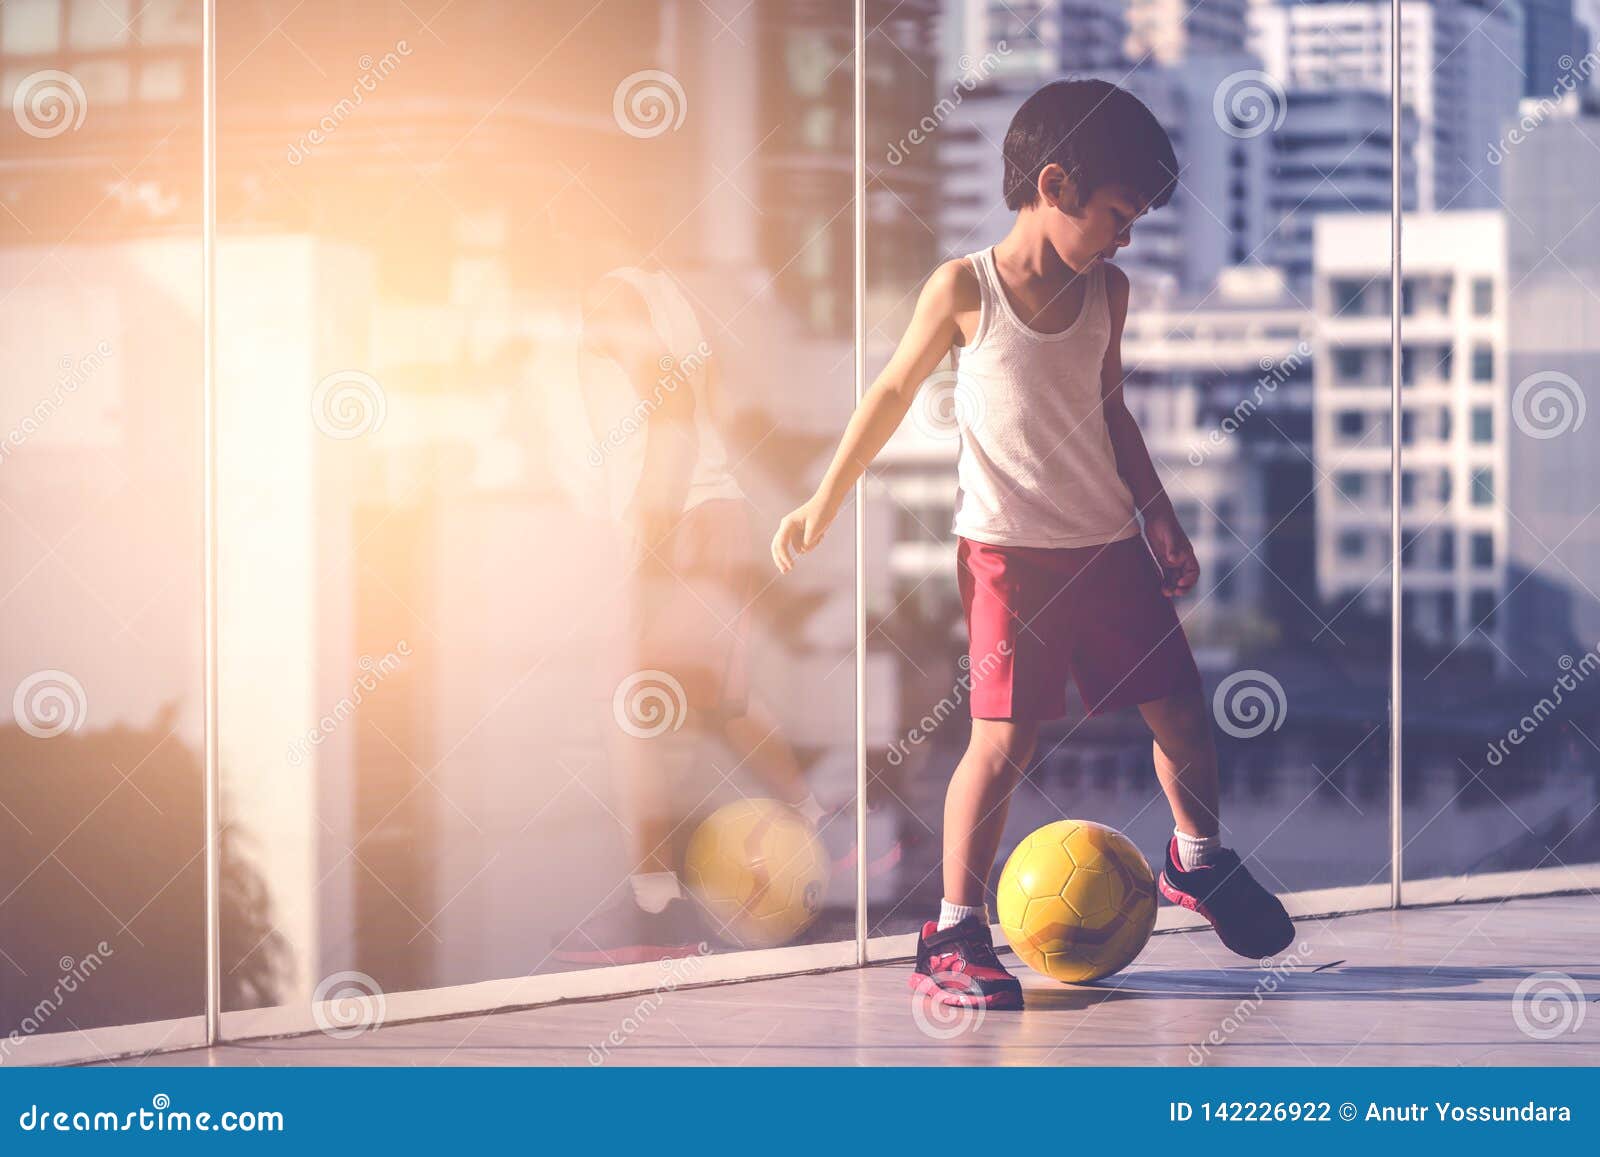 Menino jogador de futebol está pisando na bola na sala